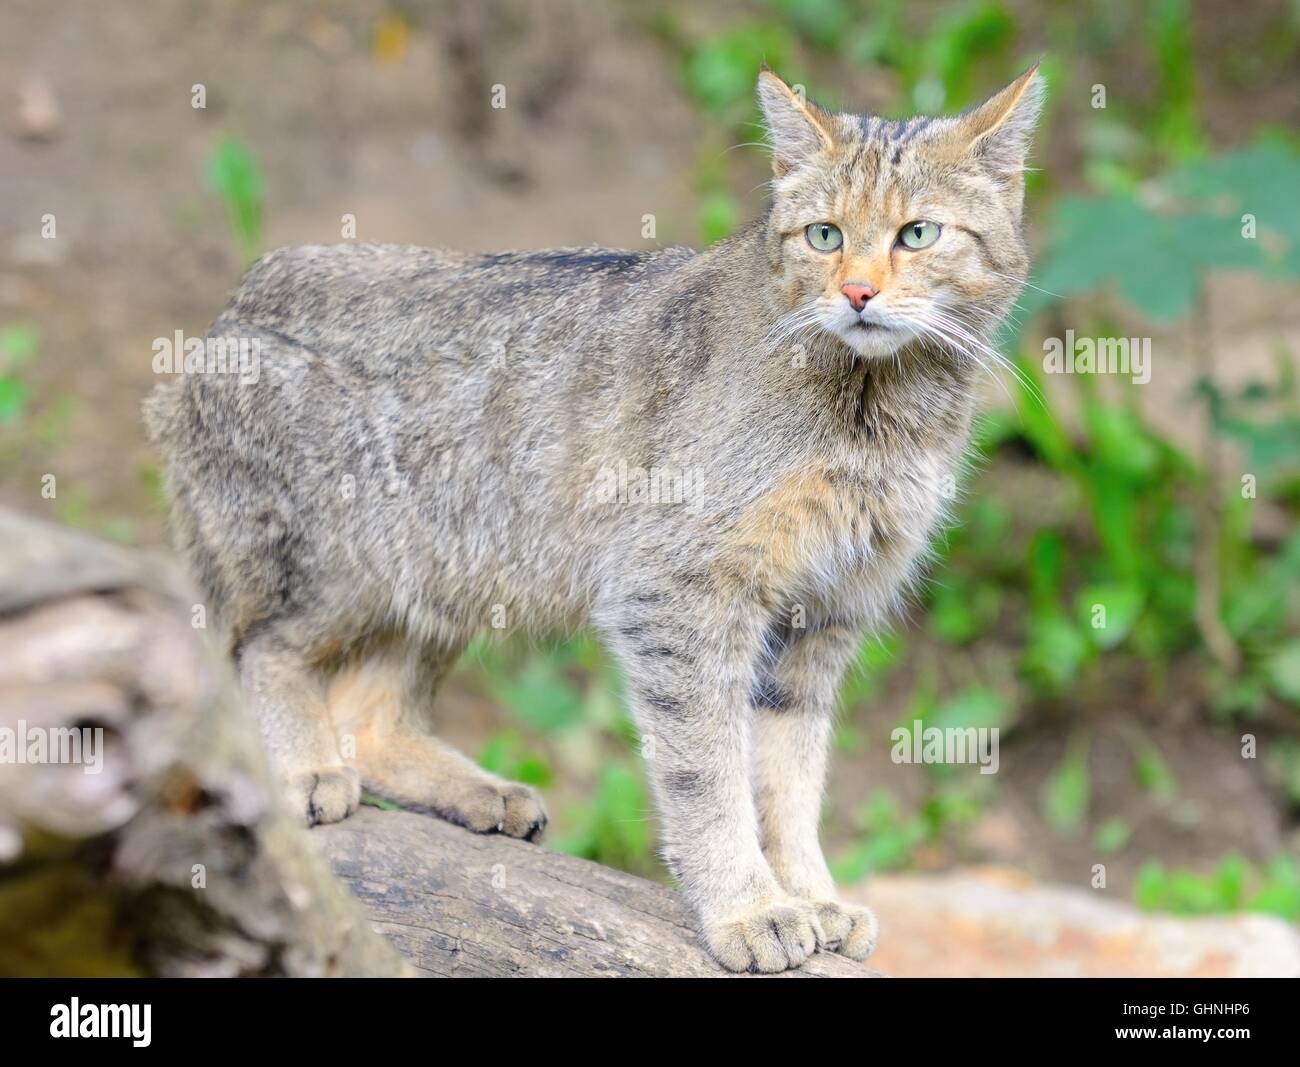 Gato Montés europeo con nombre latino Felis silvestris silvestris  Fotografía de stock - Alamy